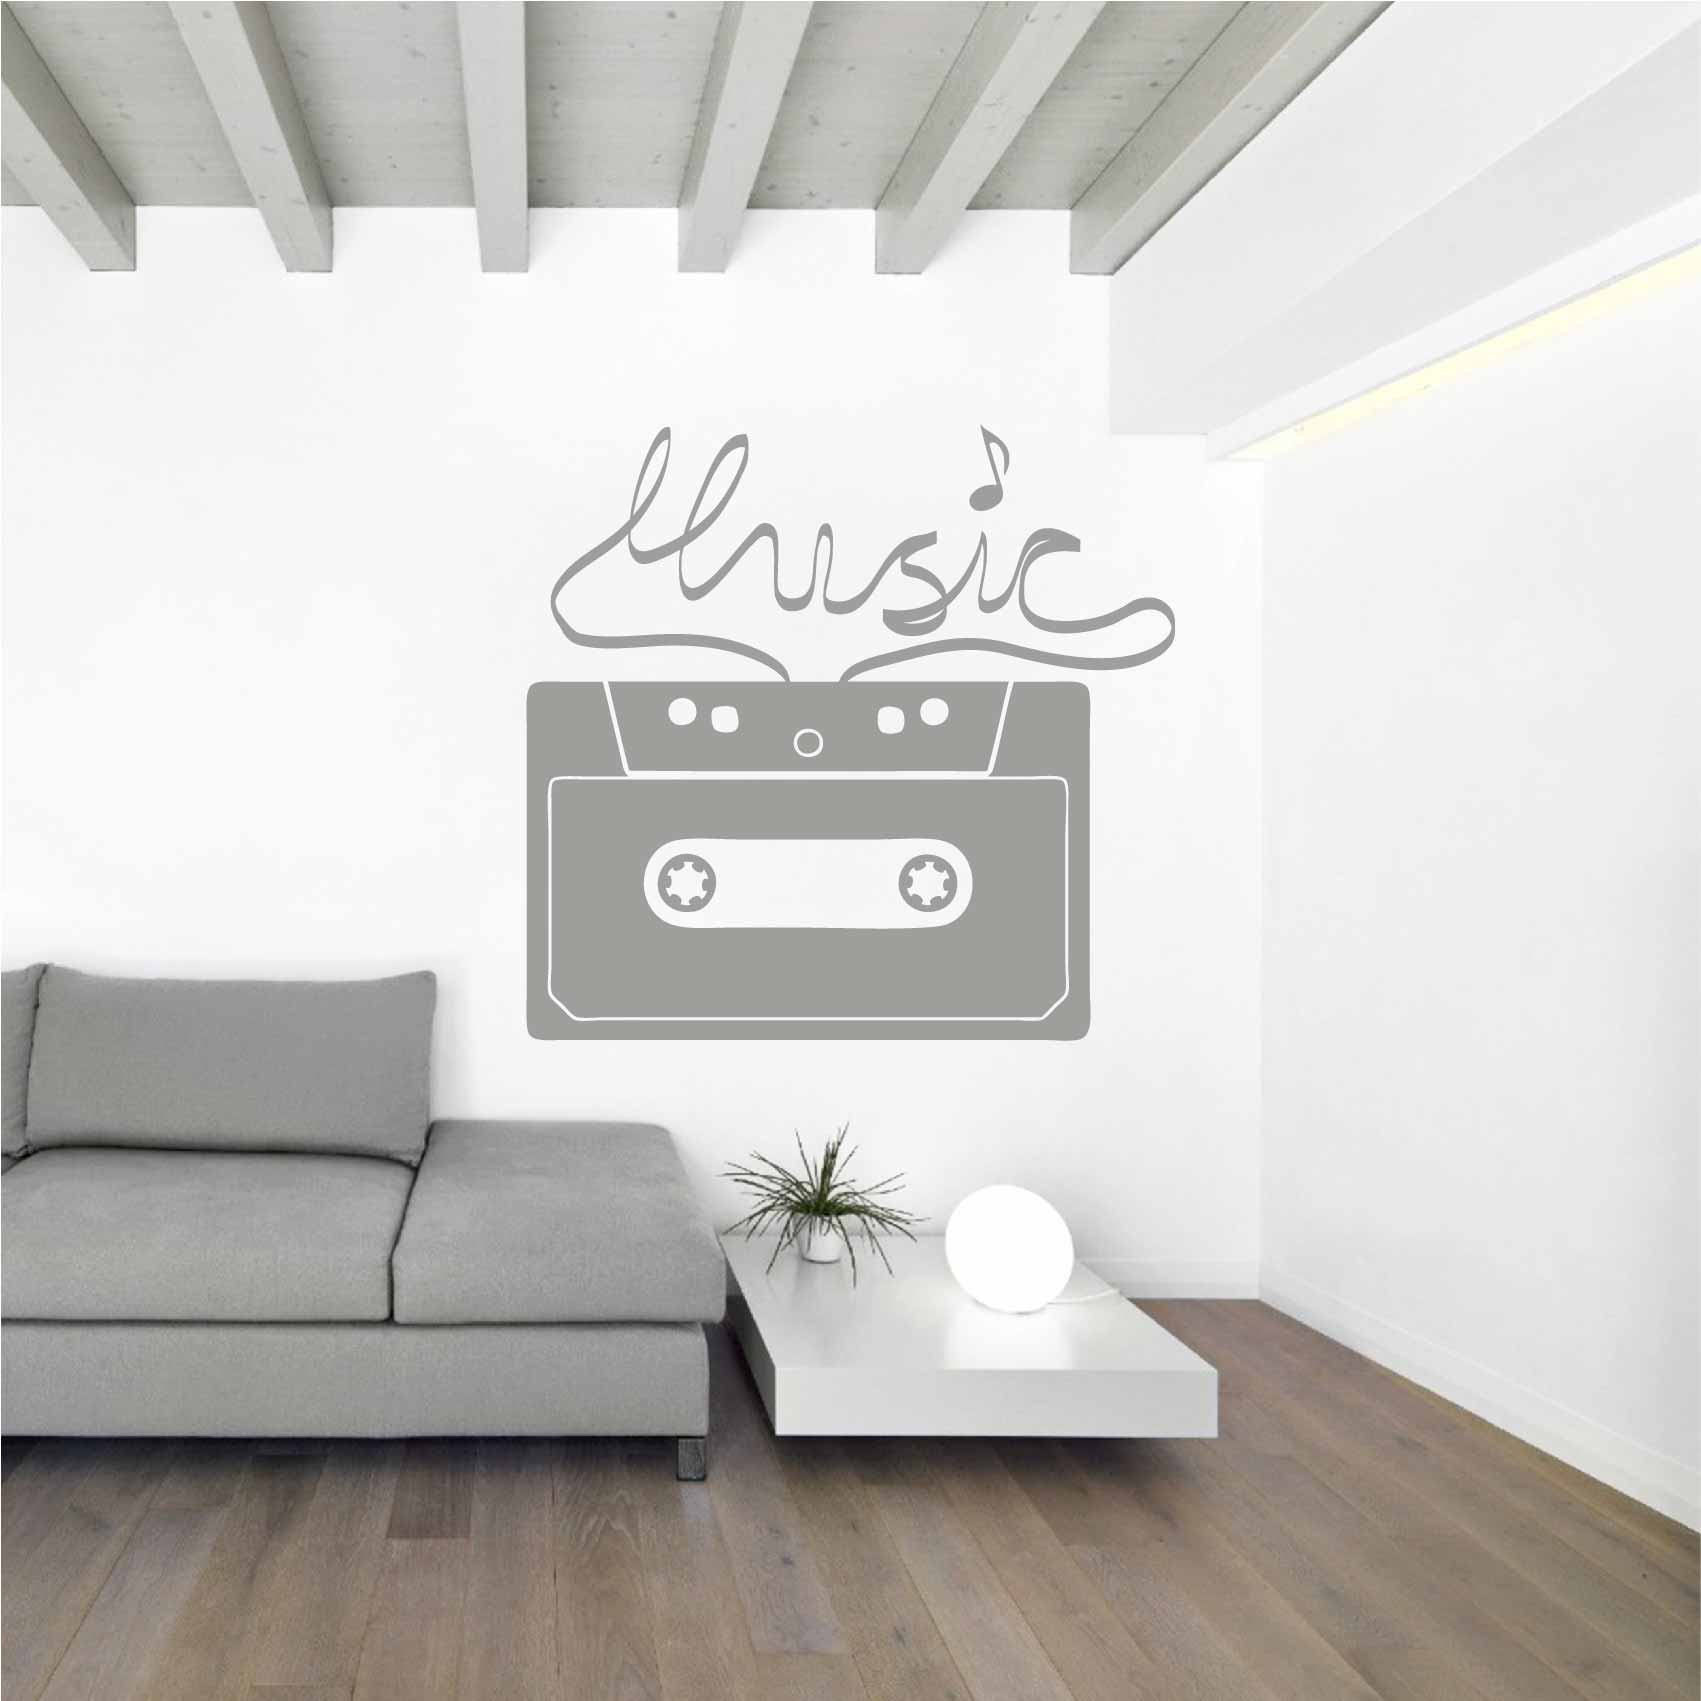 stickers-musique-retro-ref26musique-autocollant-muraux-musique-sticker-mural-musical-note-notes-deco-salon-chambre-adulte-ado-enfant